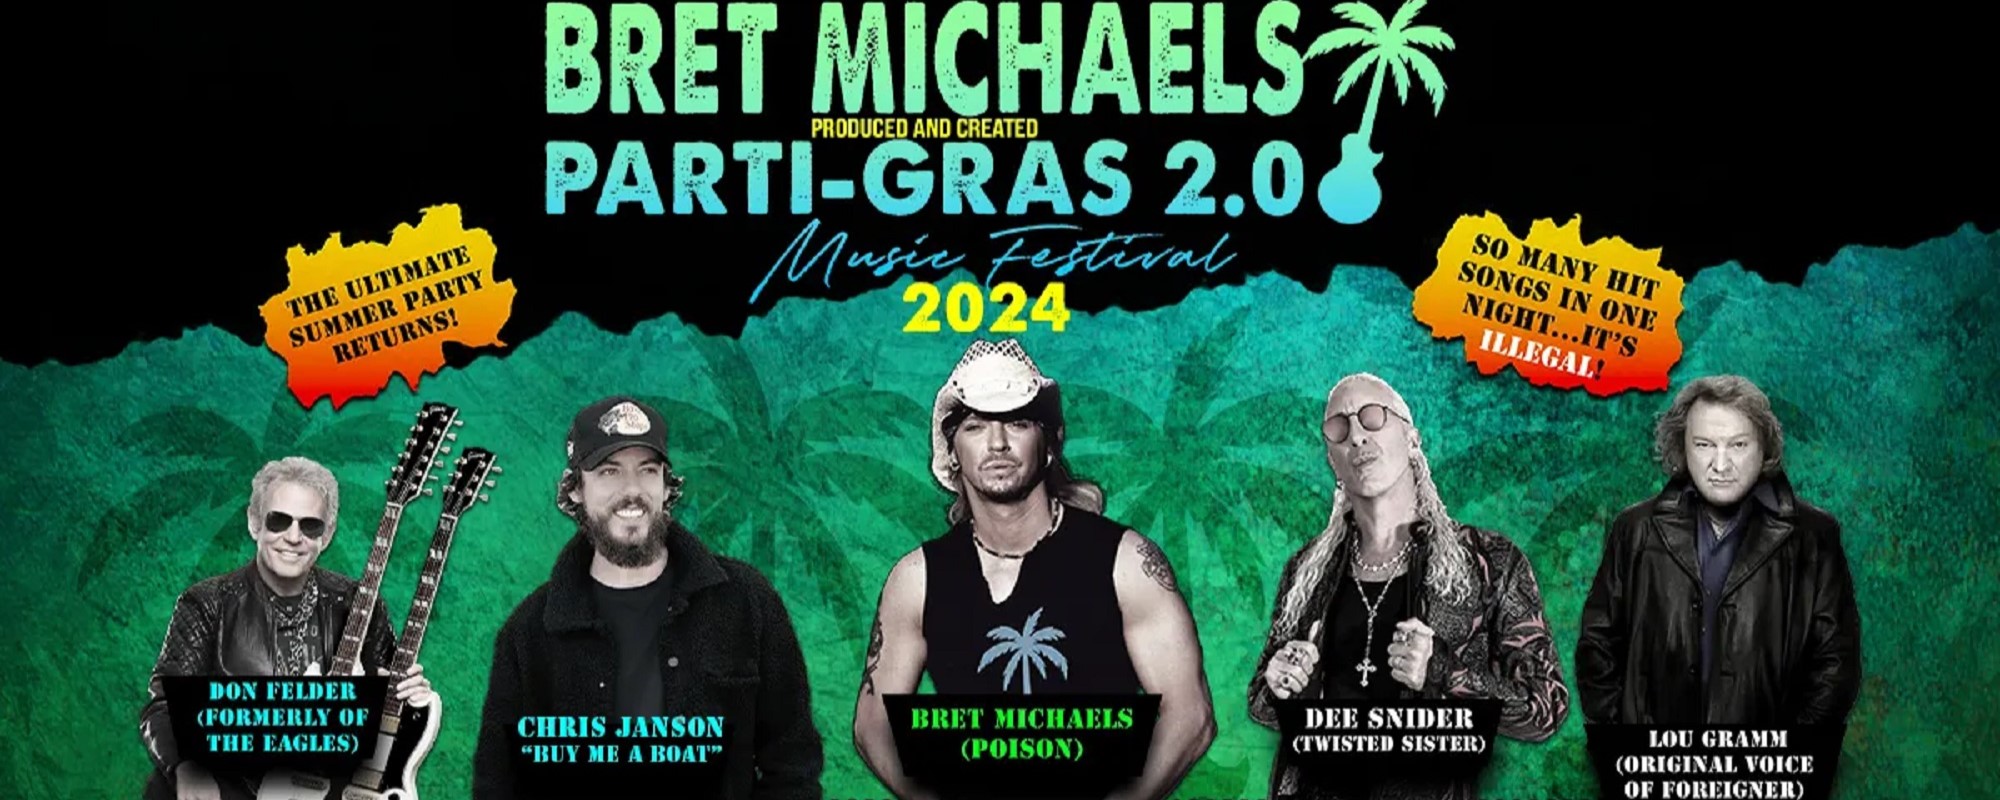 Poison’s Bret Michaels Announces Parti-Gras 2.0 Tour with Chris Janson, Lou Gramm, Don Felder & More: How to Buy Tickets